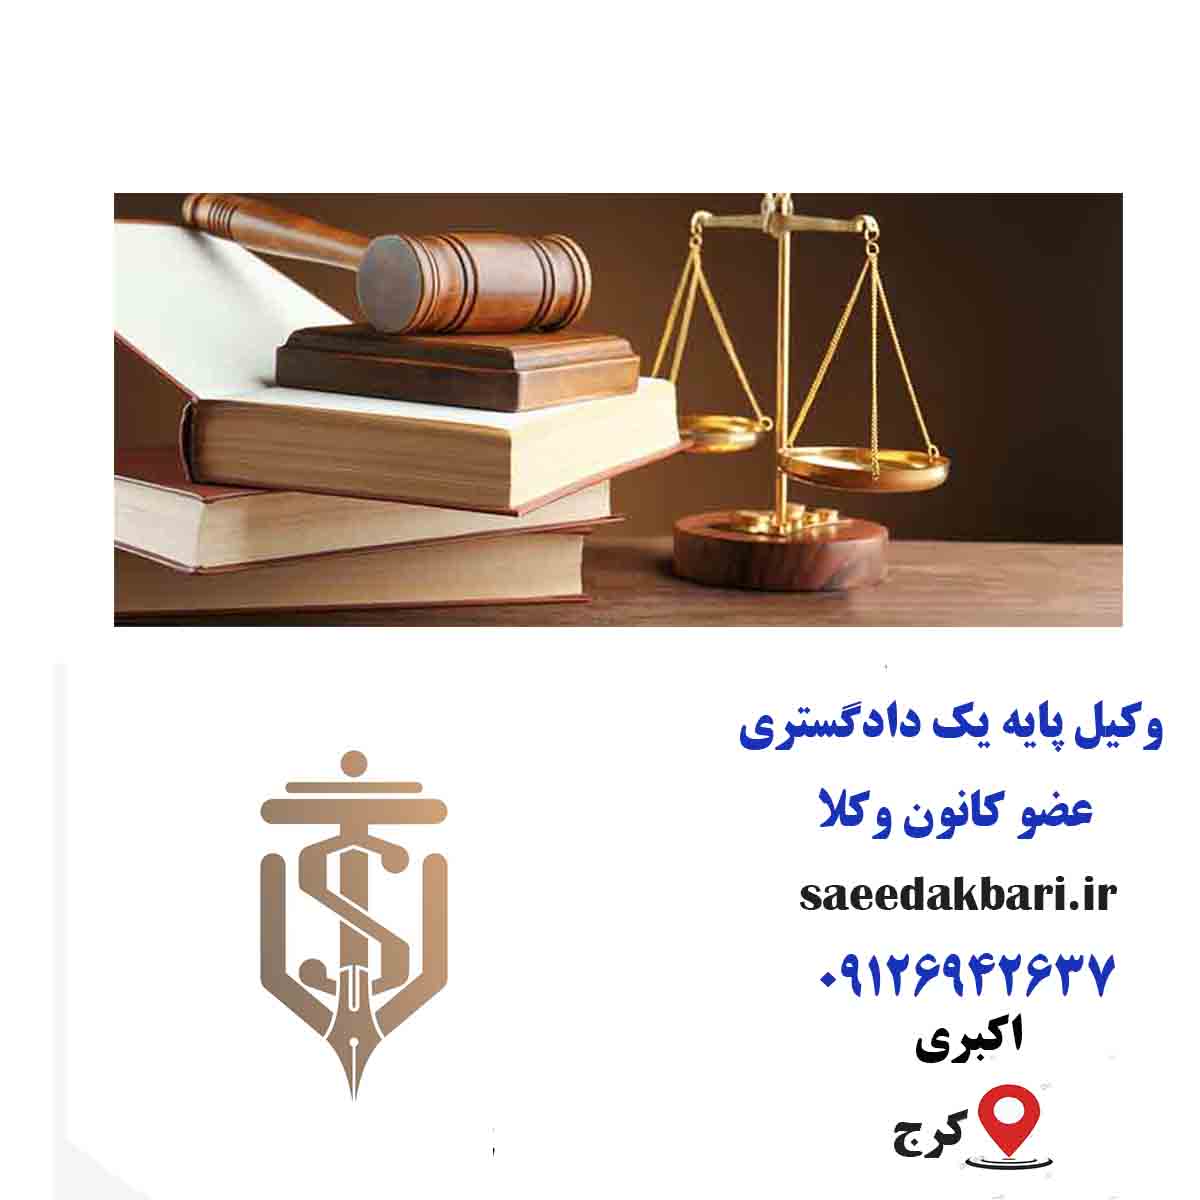 بهترین وکیل حقوقی در کرج | مشاوره حقوقی | اکبری